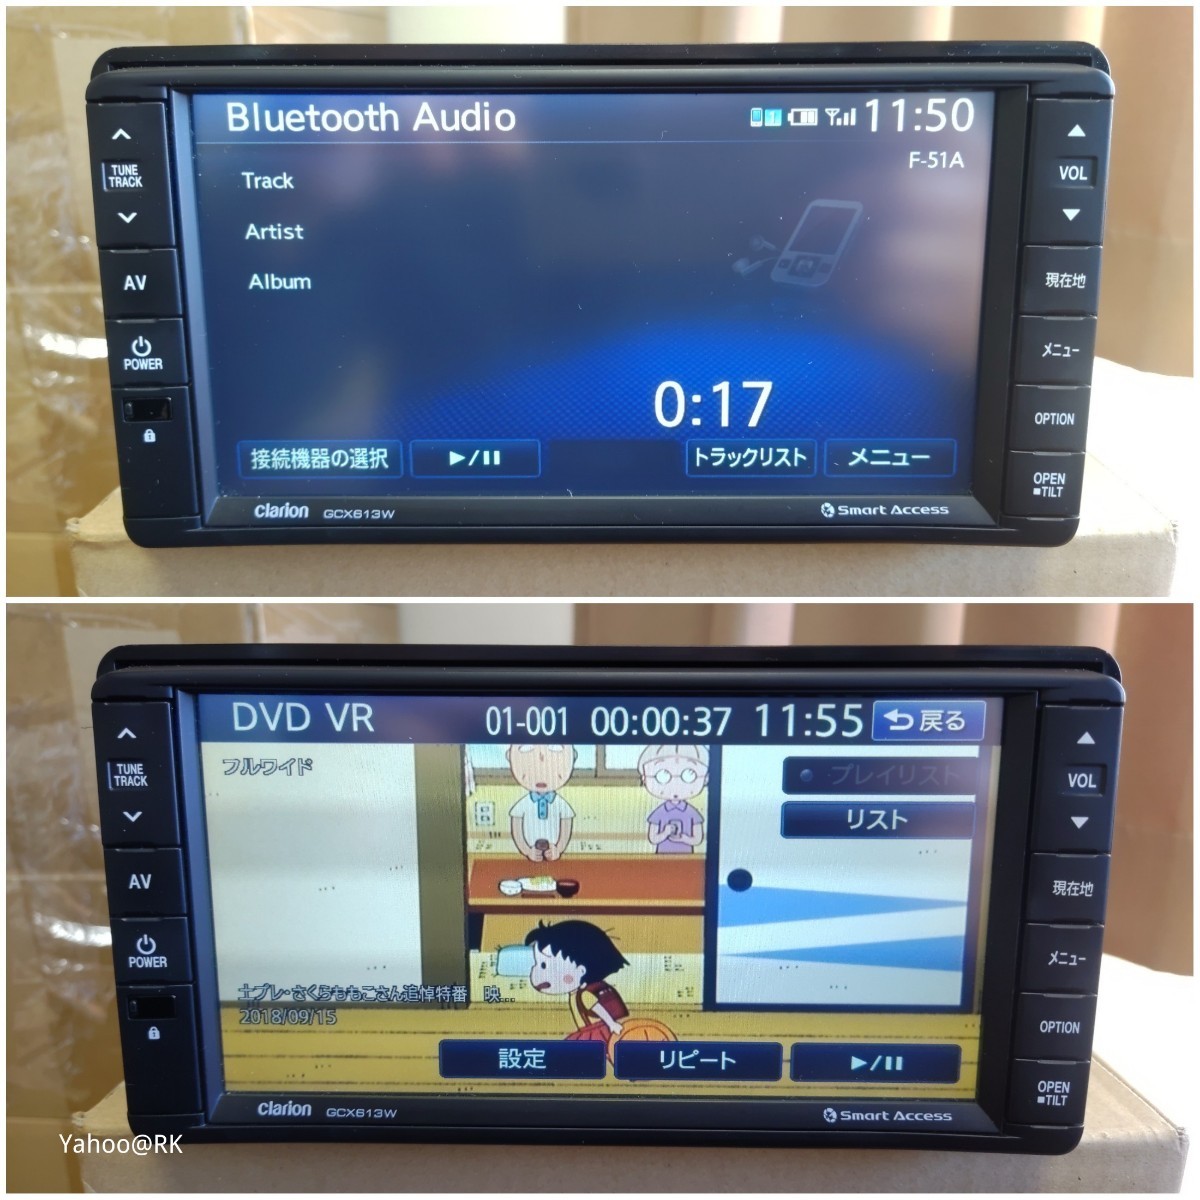 三菱 純正ナビ GCX613W Clarion NX613 同等品 DVD再生 Bluetooth テレビ フルセグ SDカード USB iPod_画像2